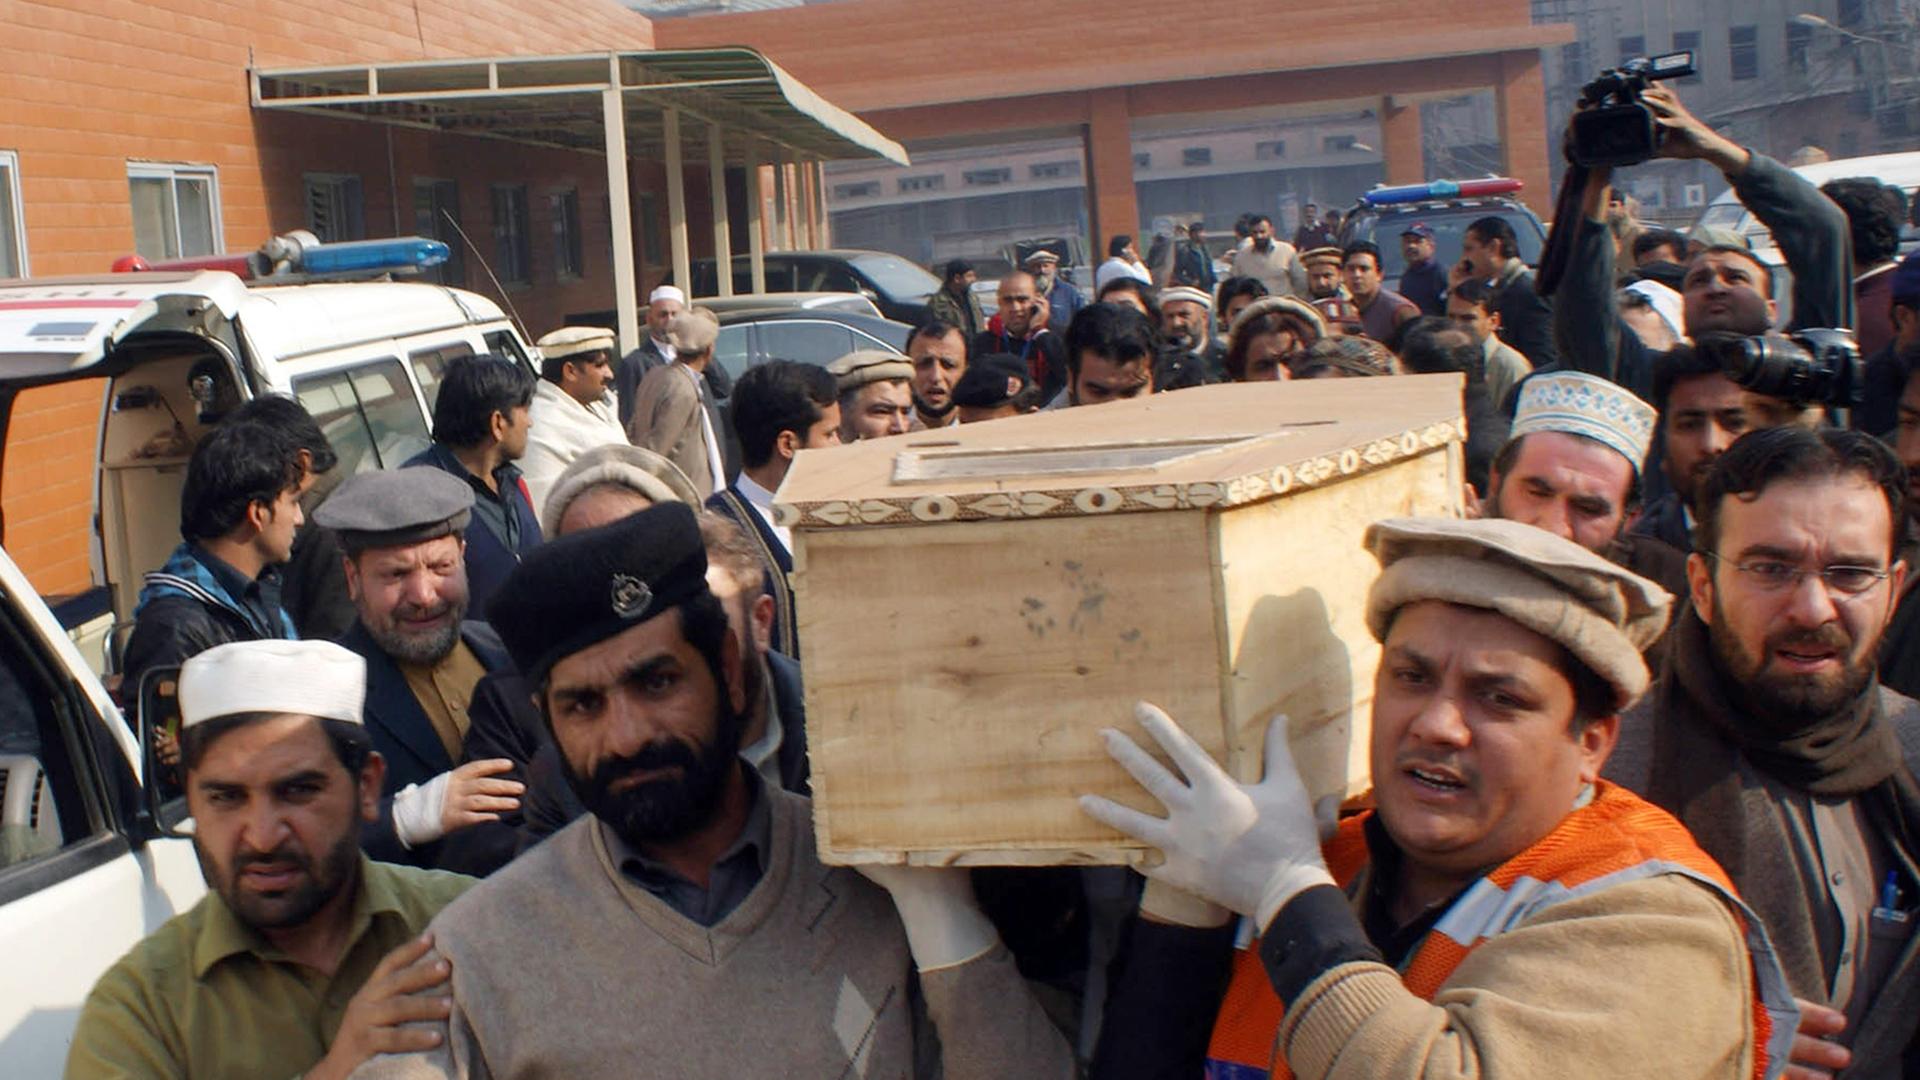 Freiwillige tragen einen Sarg nach dem Taliban-Angriff auf eine Schule in Pakistan.